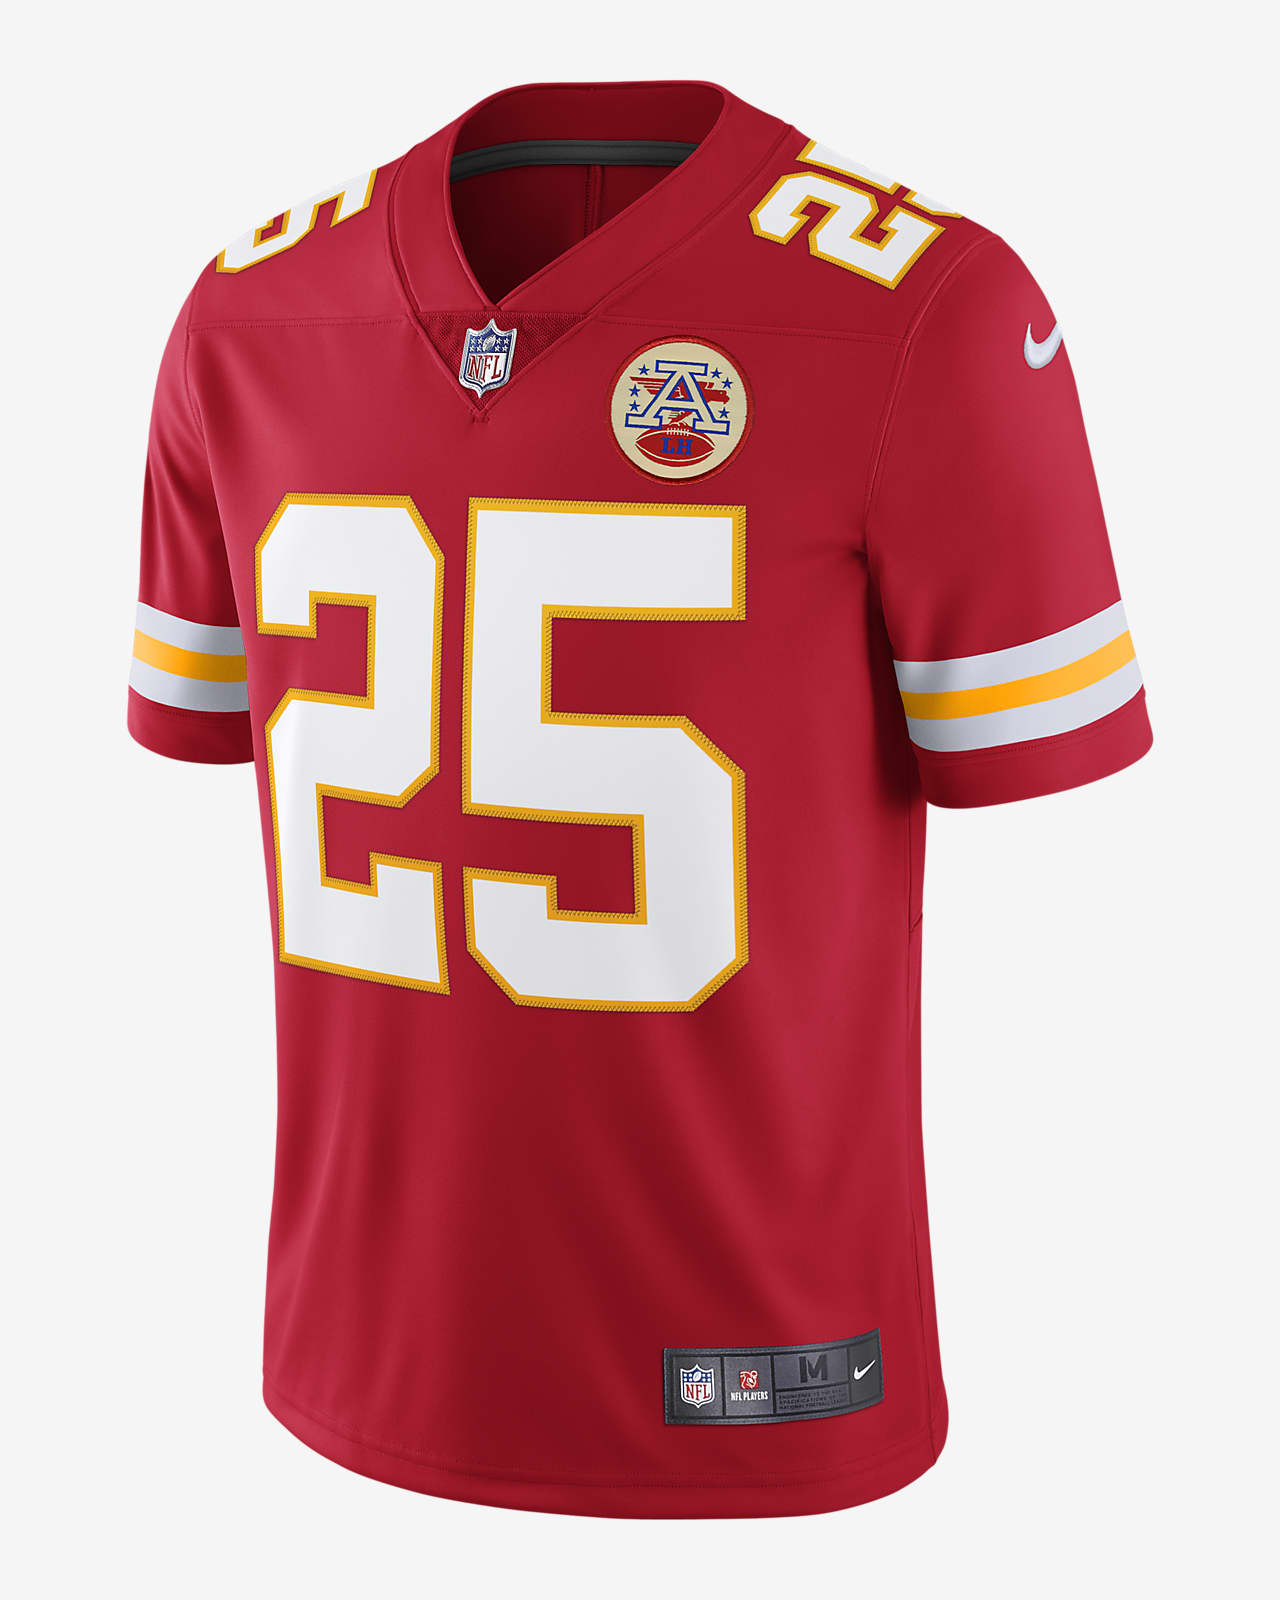 Jersey de fútbol americano edición limitada para hombre NFL Kansas City  Chiefs Nike Vapor Untouchable (Clyde Edwards-Helaire). 